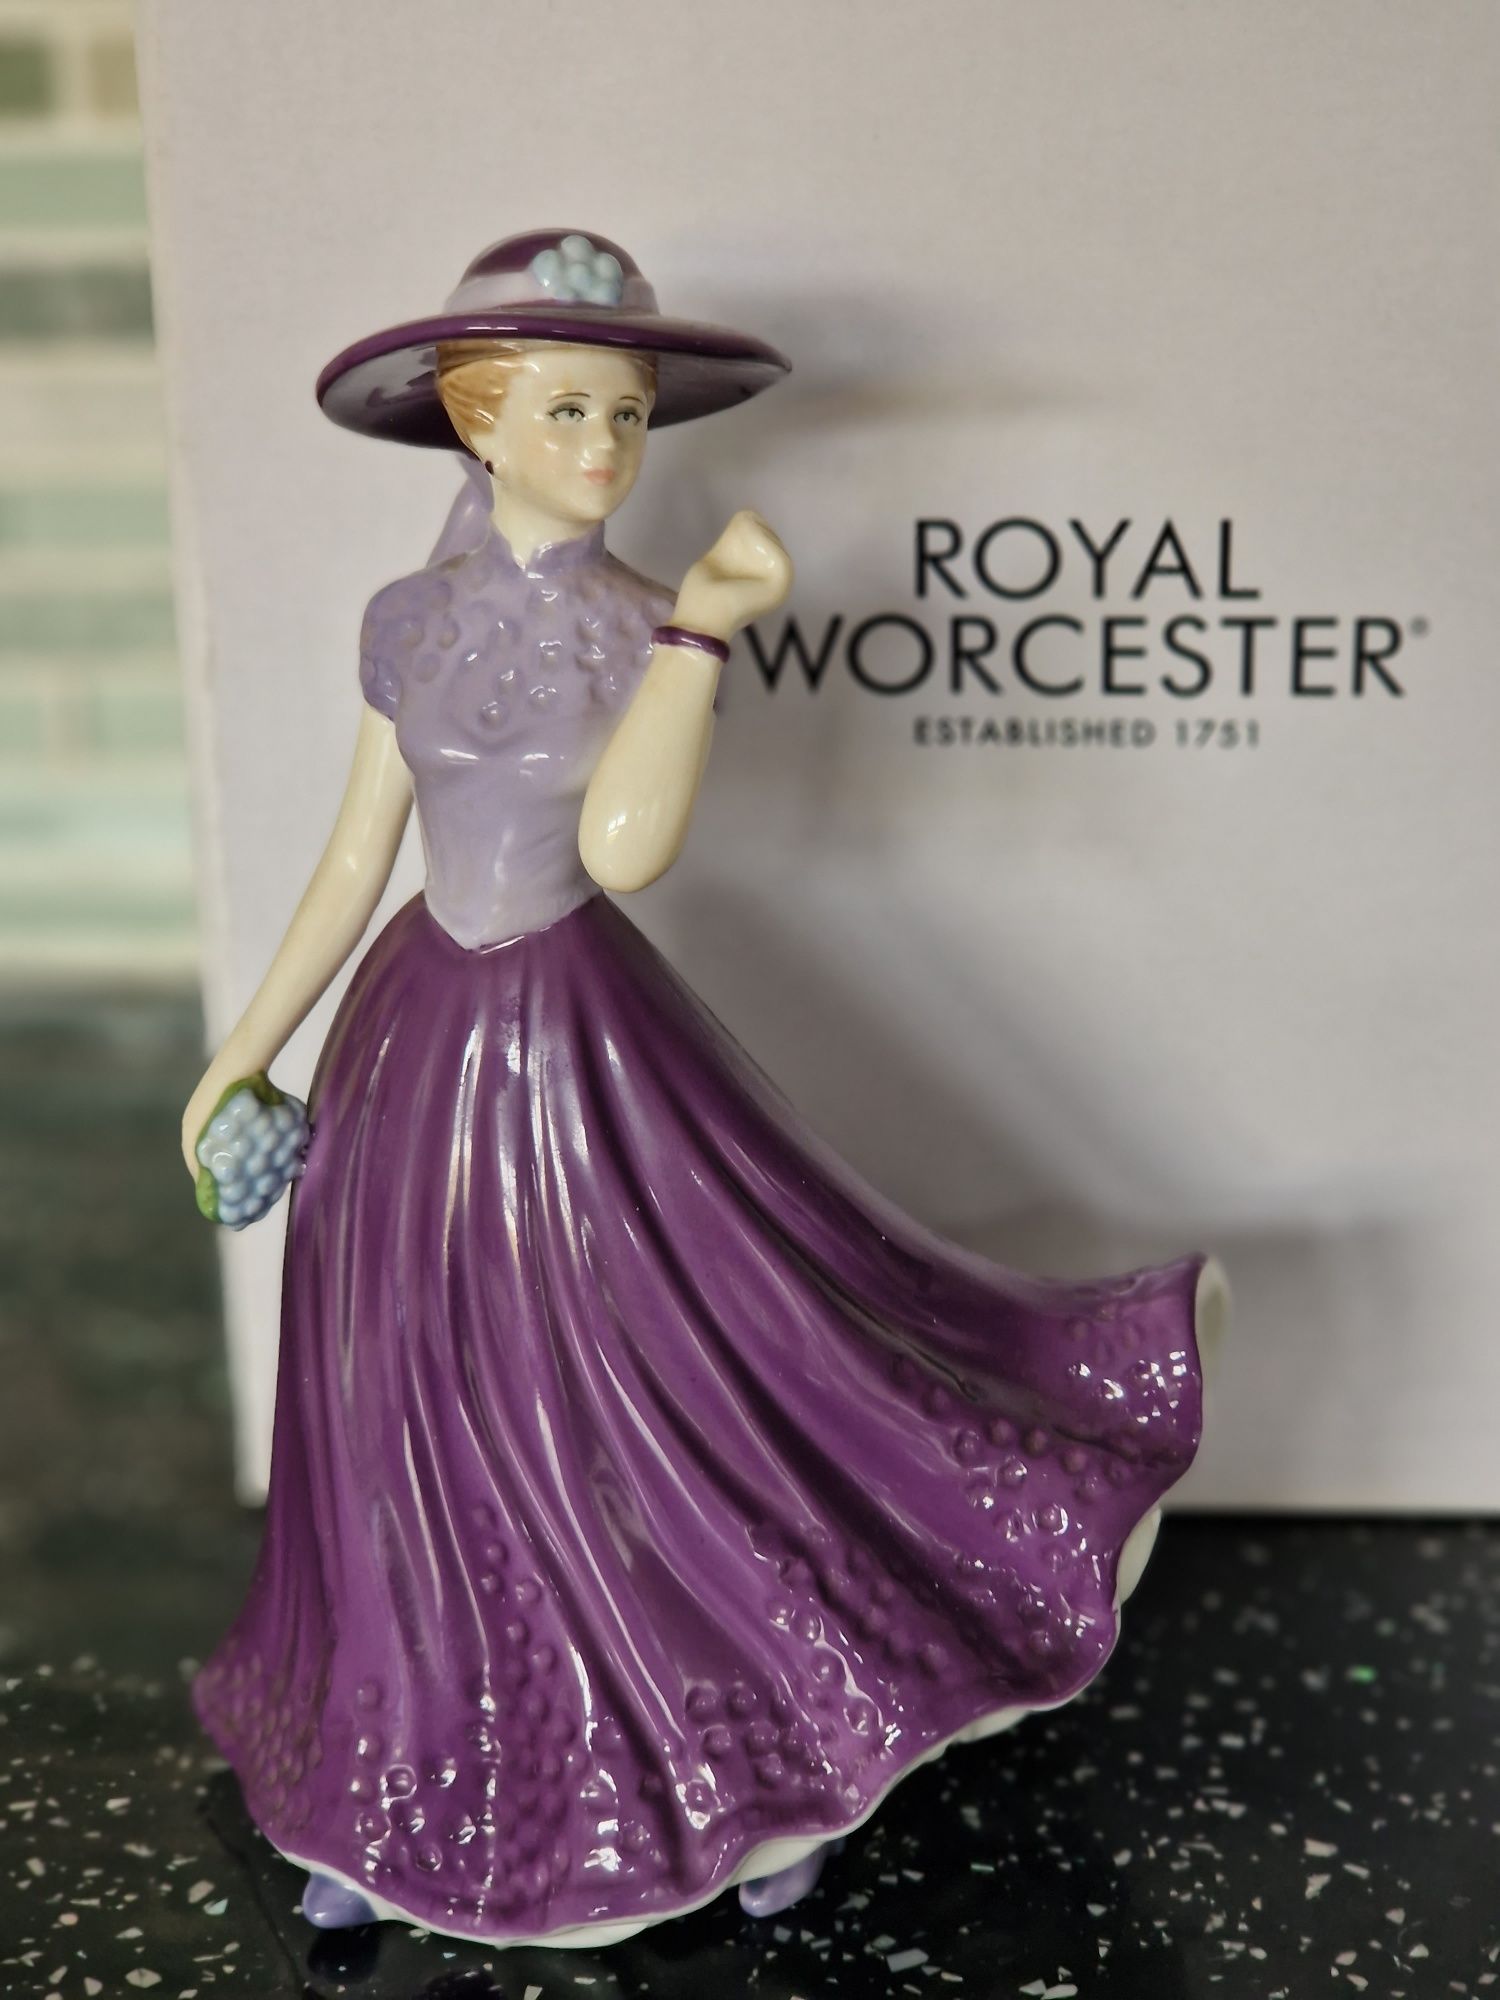 #Figurka ROYAL Worcester CHARLOTTE